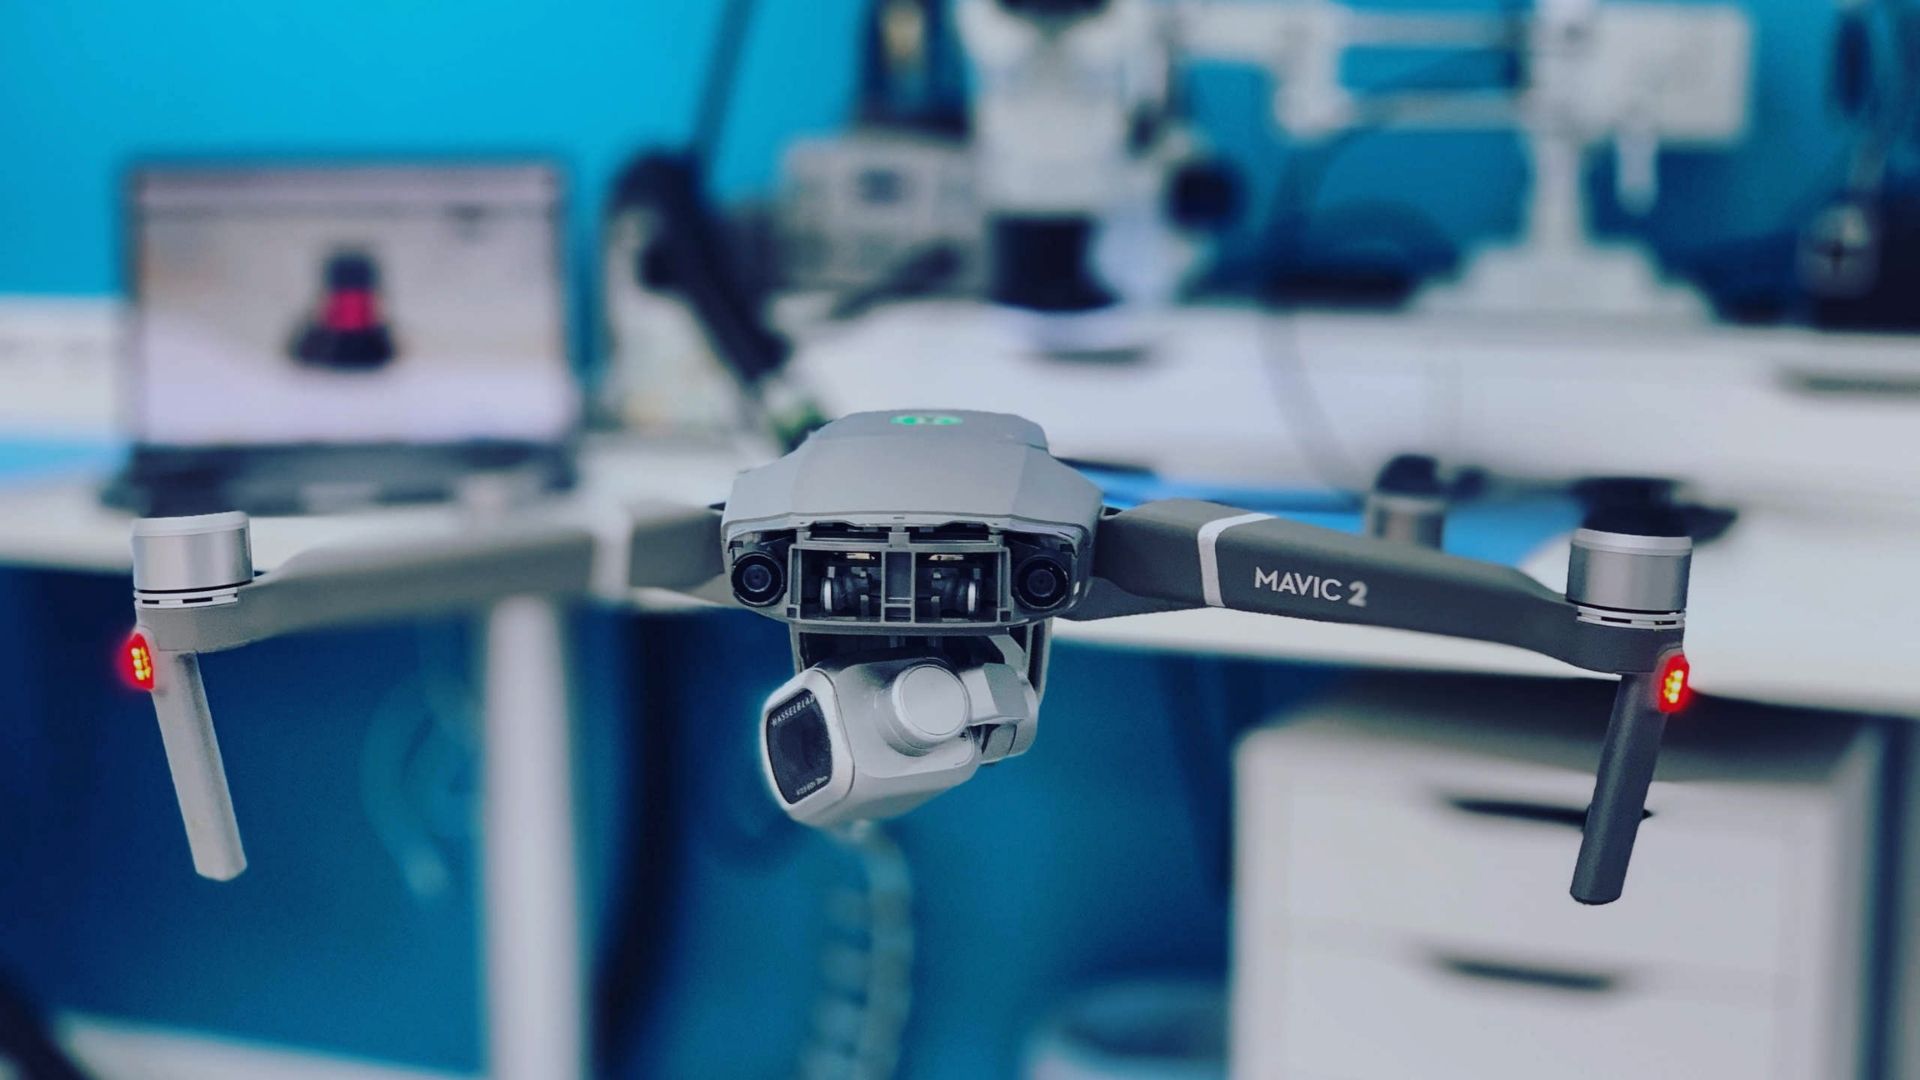 Mavic drone camera